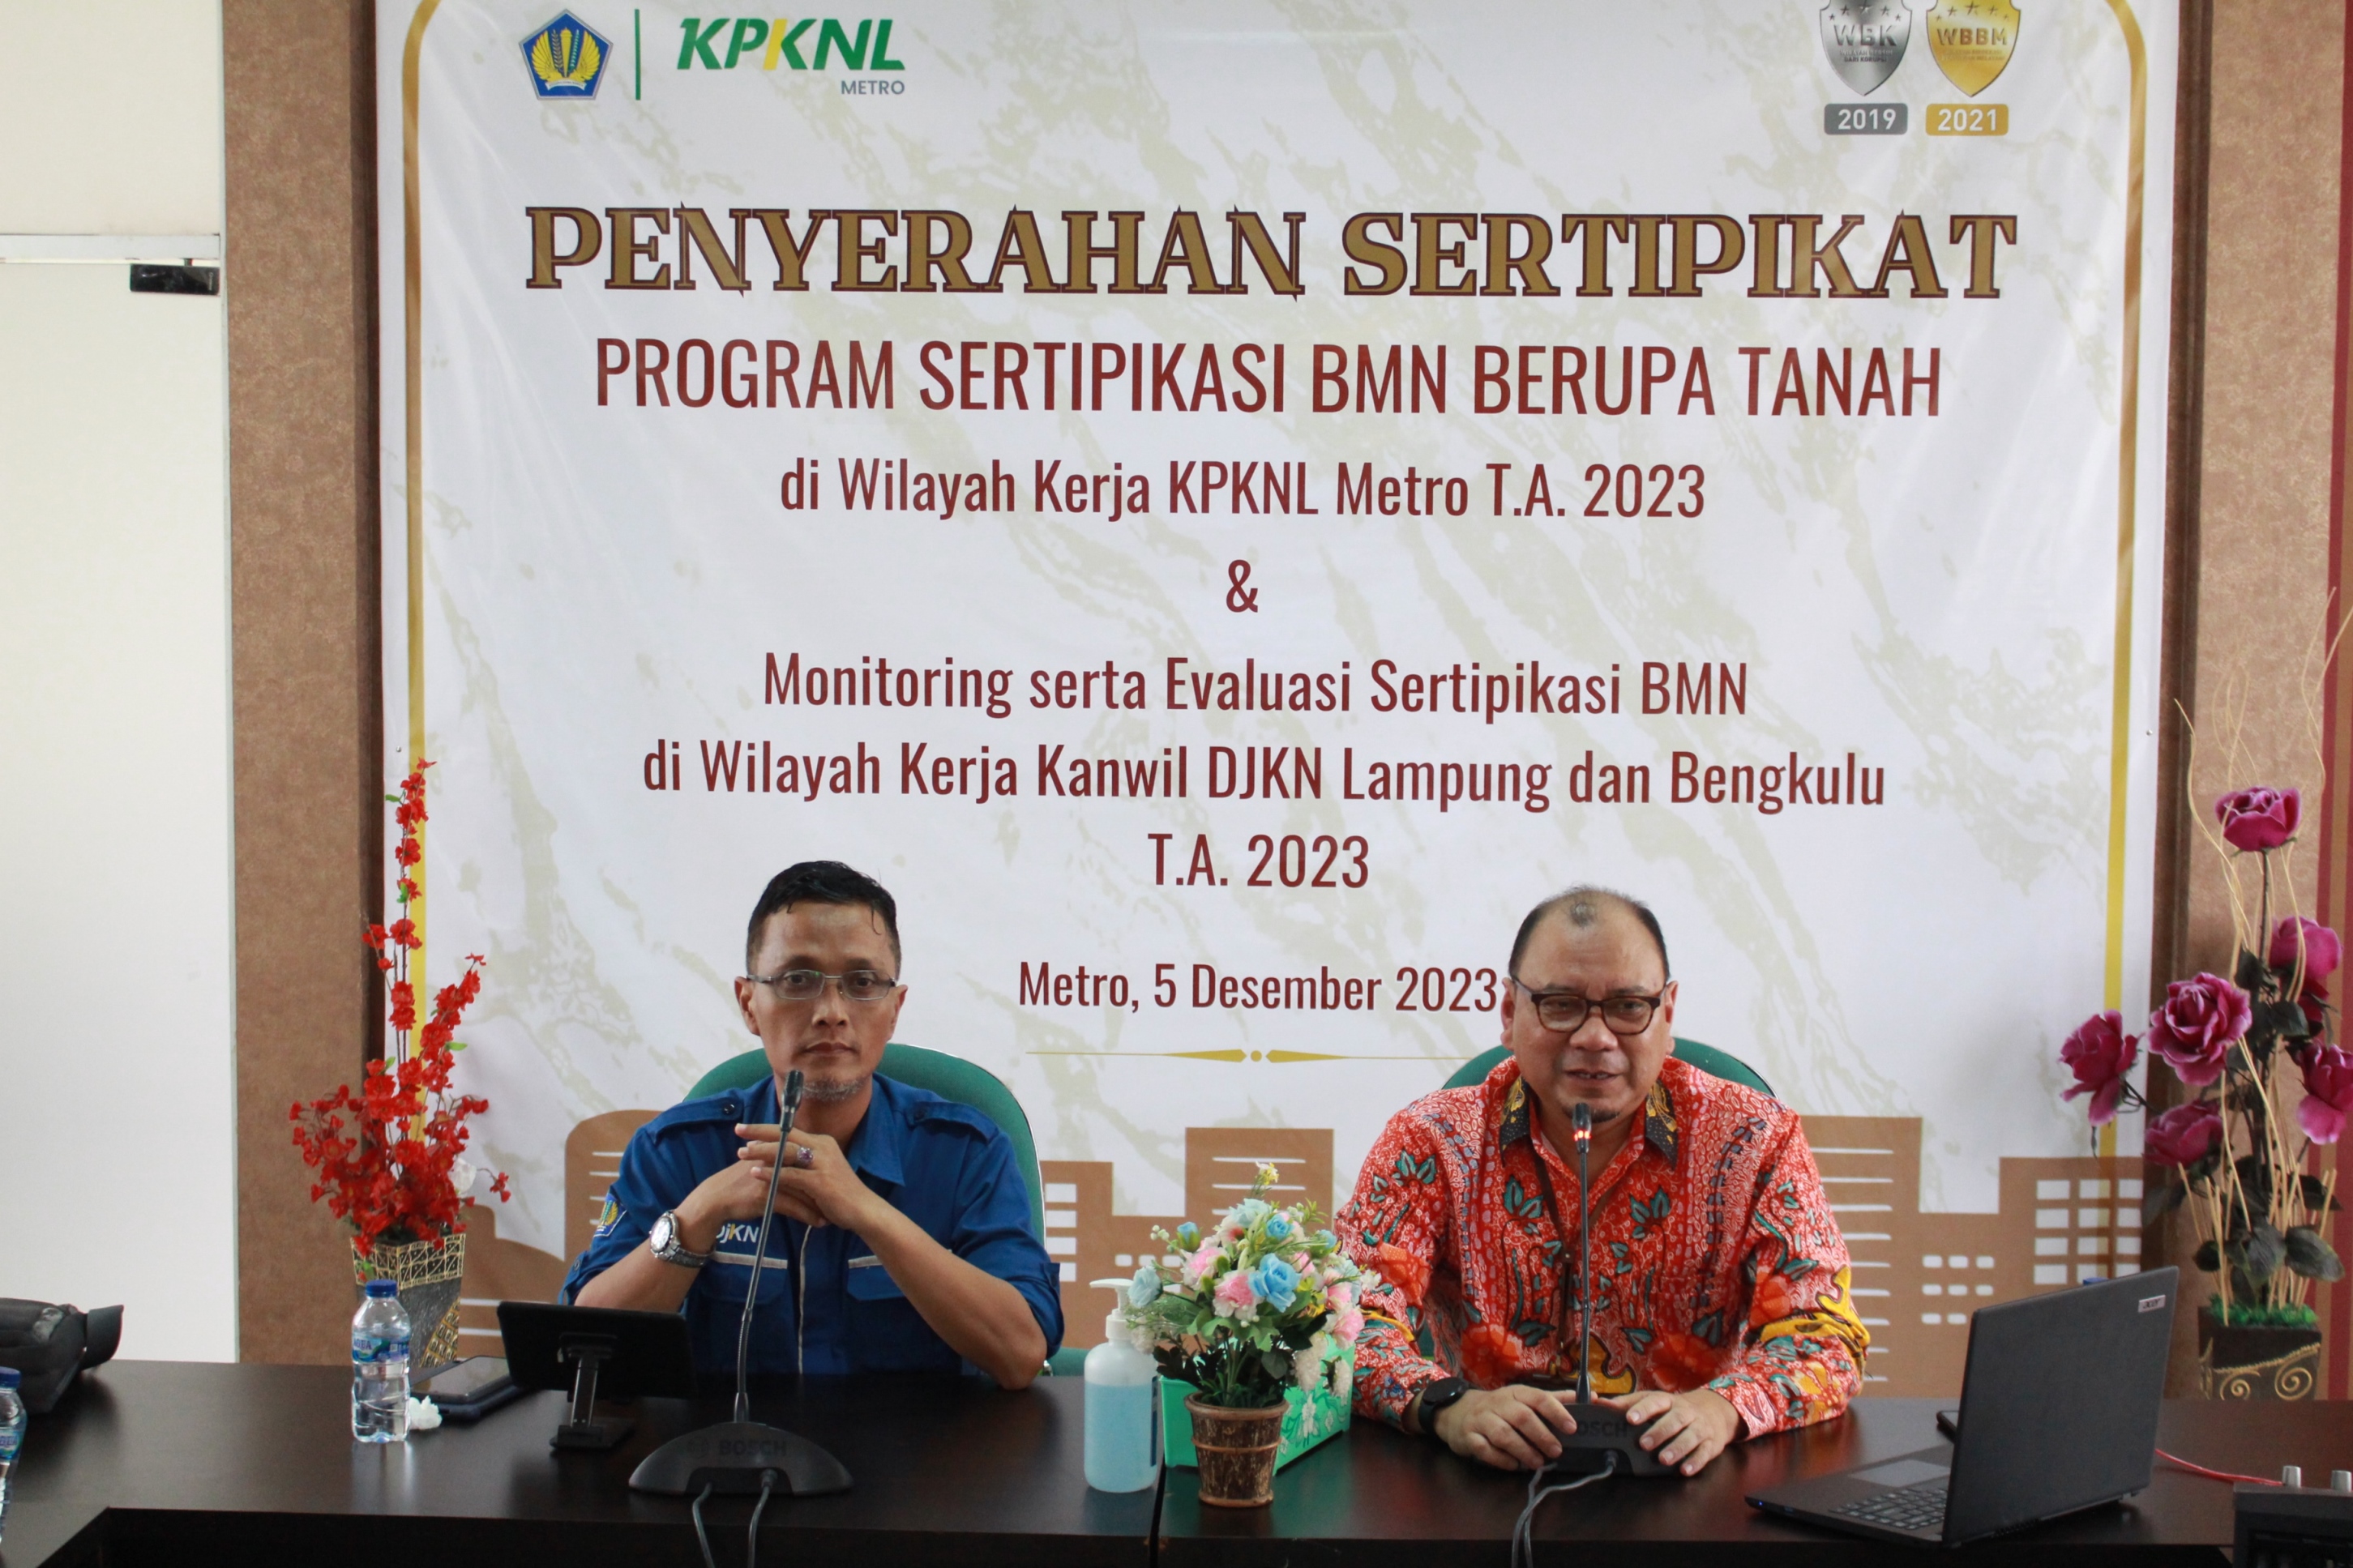 Monitoring dan Evaluasi Sertipikasi BMN Berupa Tanah di Wilayah Kanwil DJKN Lampung dan Bengkulu Tahun 2023